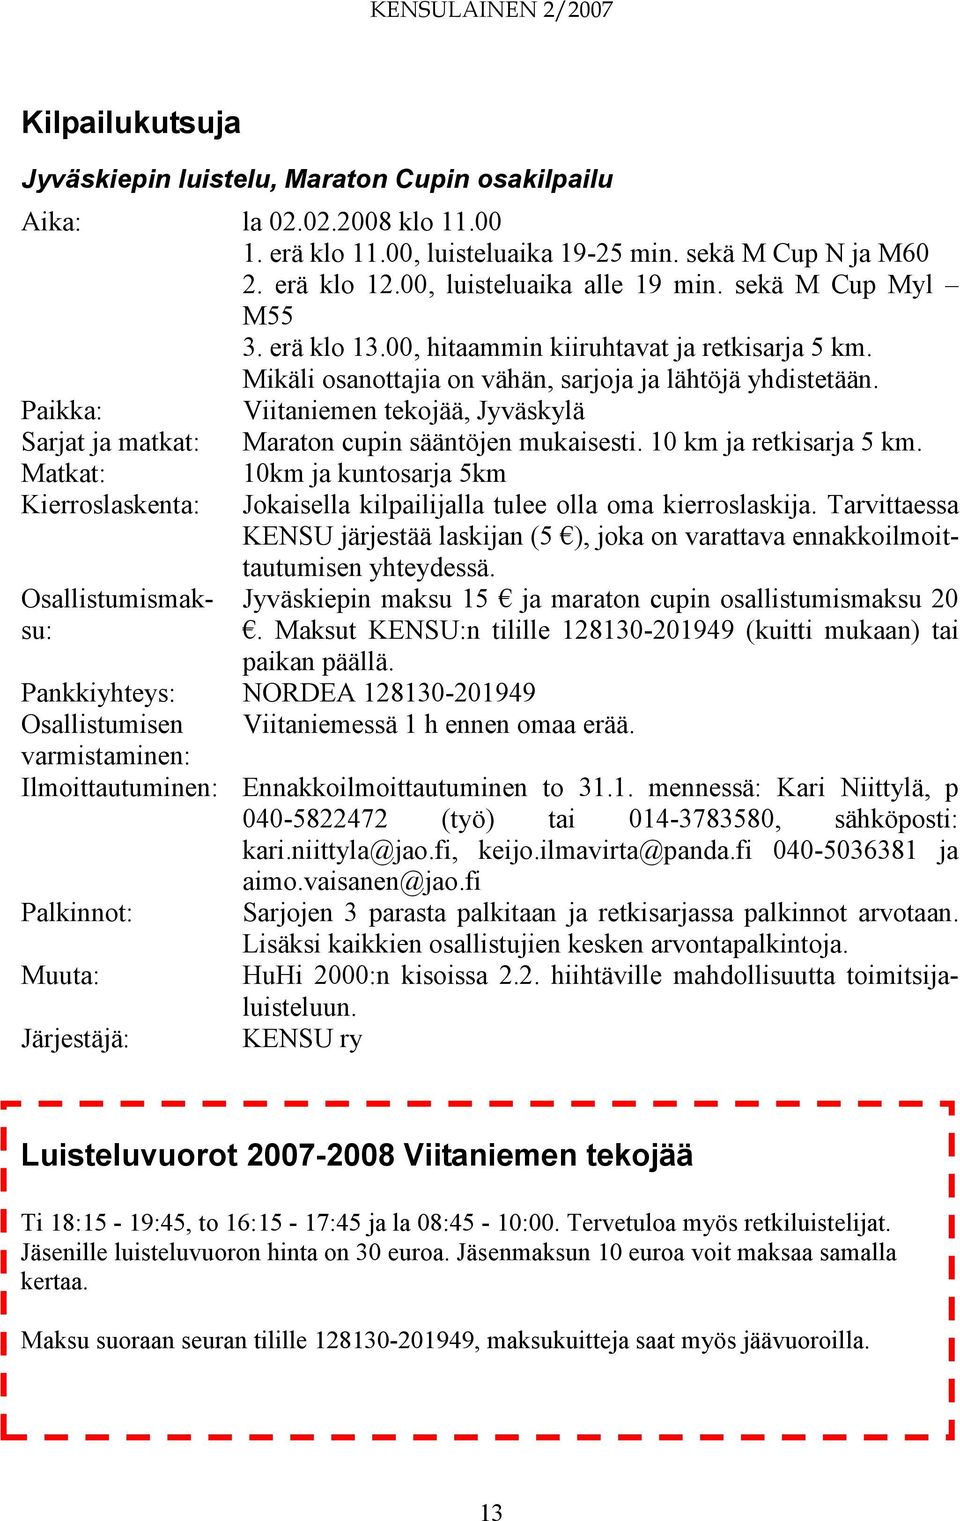 Paikka: Viitaniemen tekojää, Jyväskylä Sarjat ja matkat: Maraton cupin sääntöjen mukaisesti. 10 km ja retkisarja 5 km.